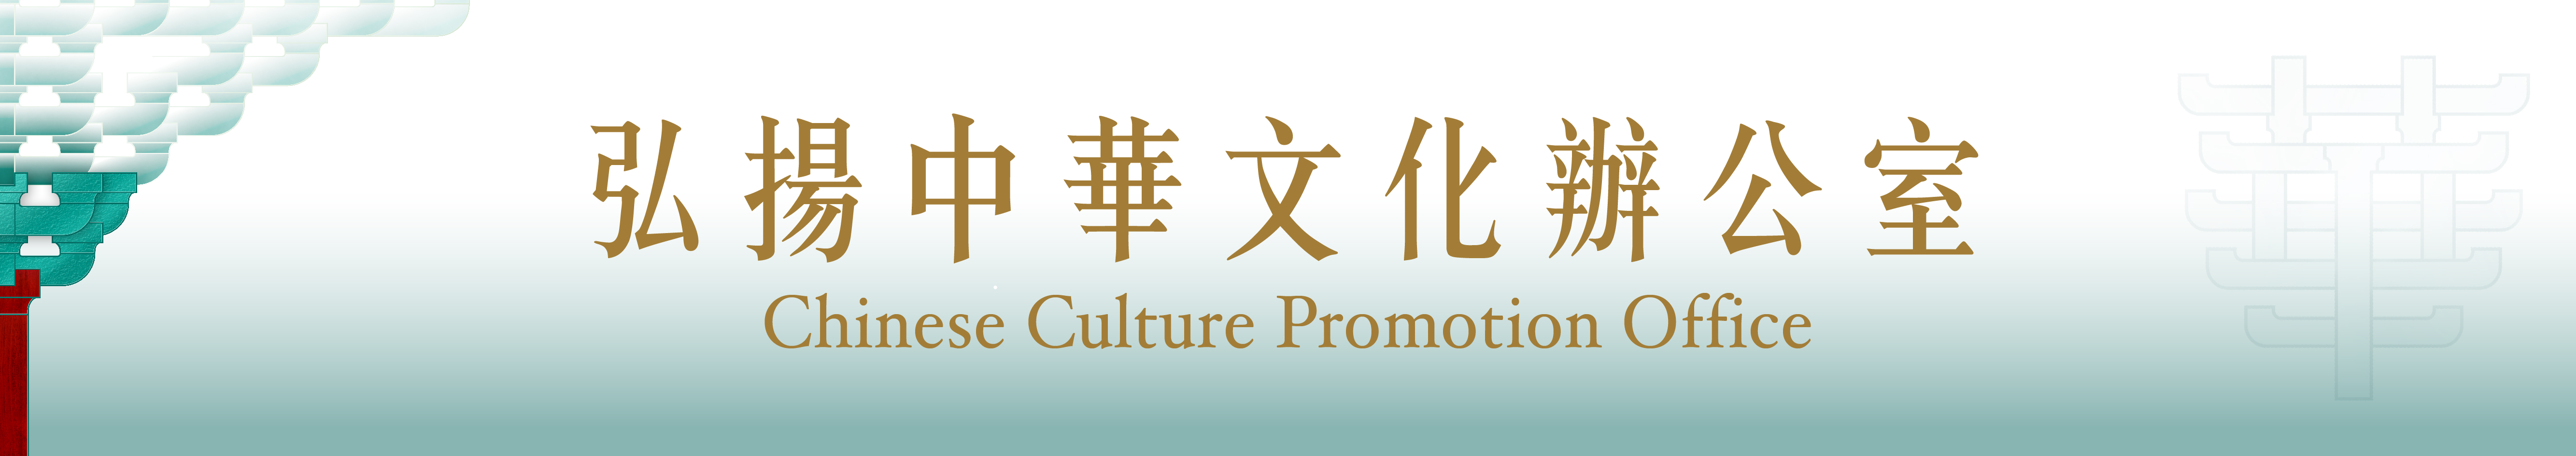 弘扬中华文化系列